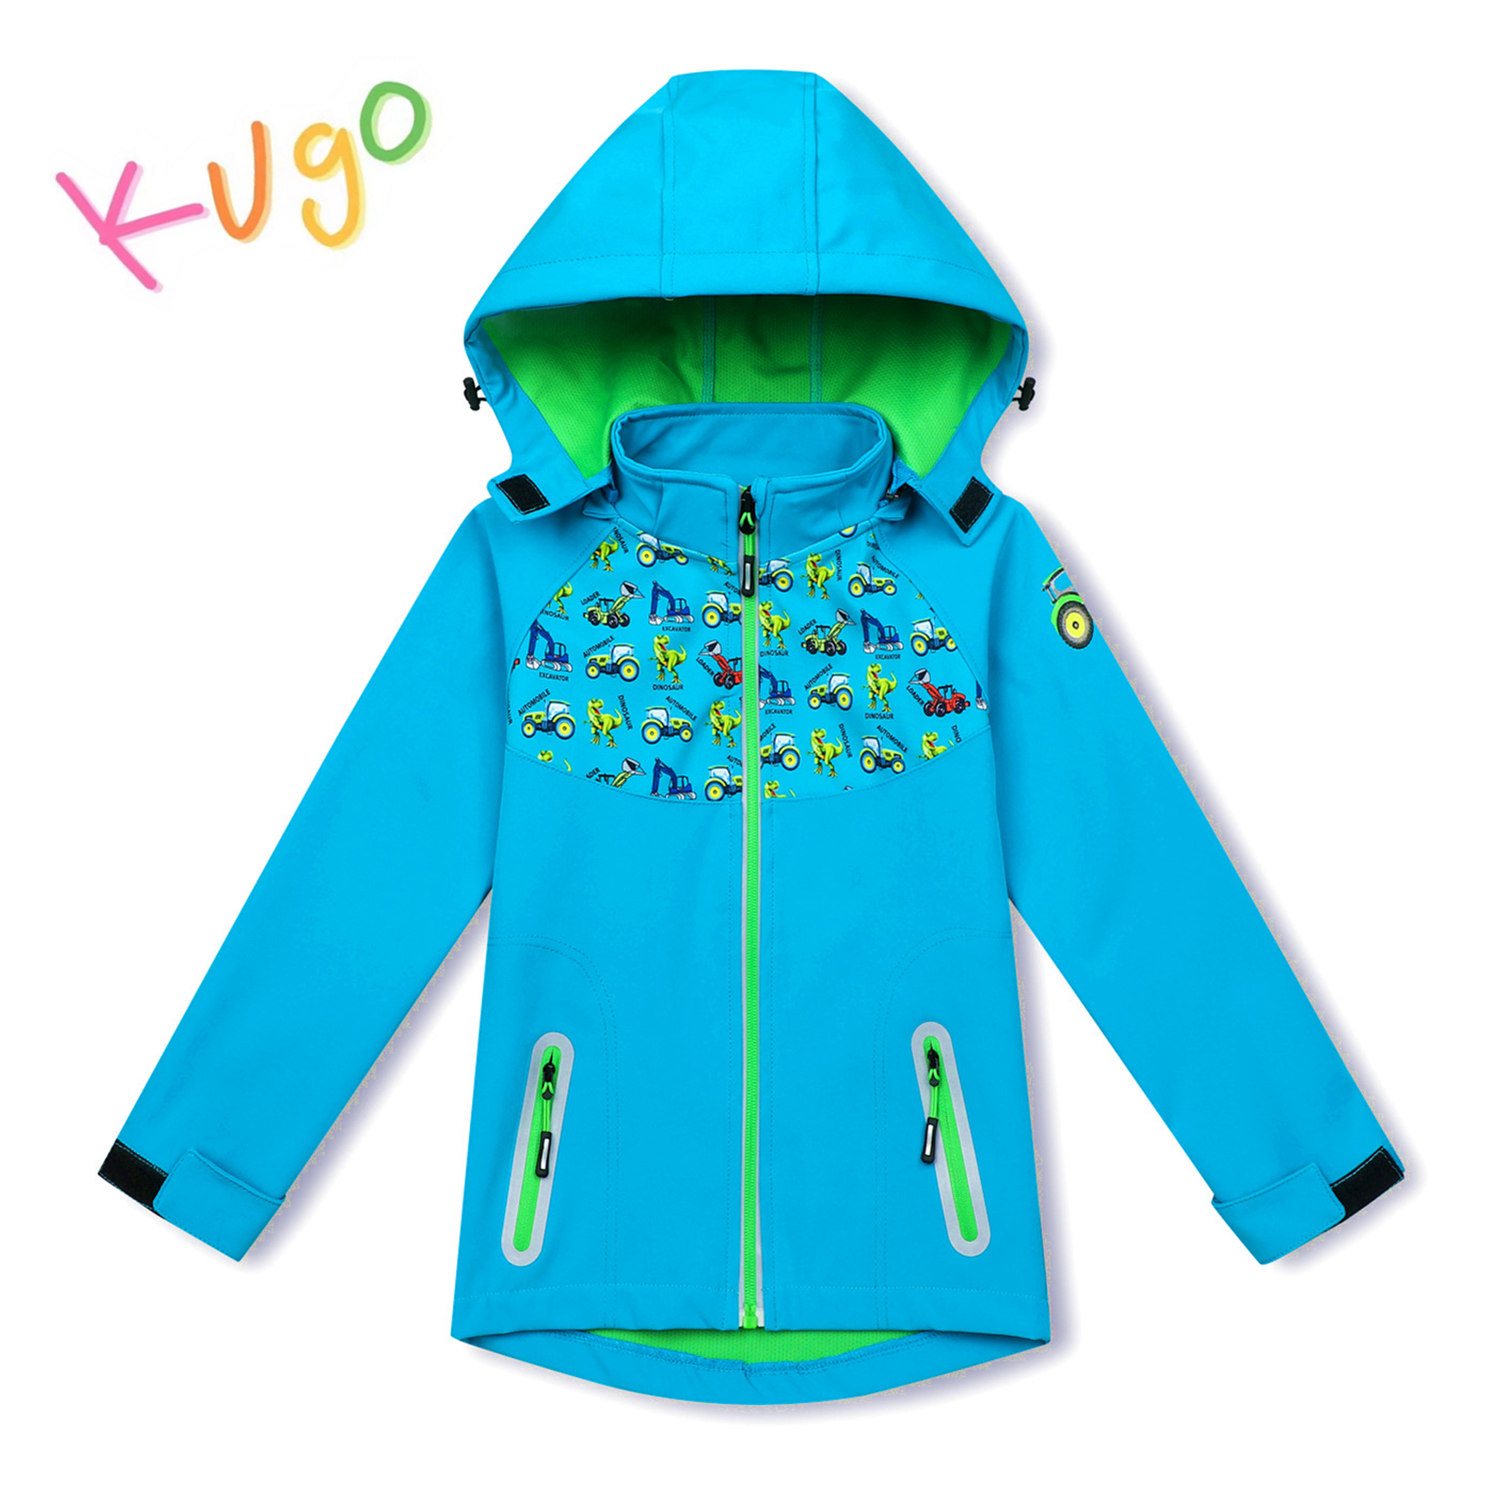 Chlapecká softshellová bunda - KUGO HK3121, tyrkysová Barva: Tyrkysová, Velikost: 80